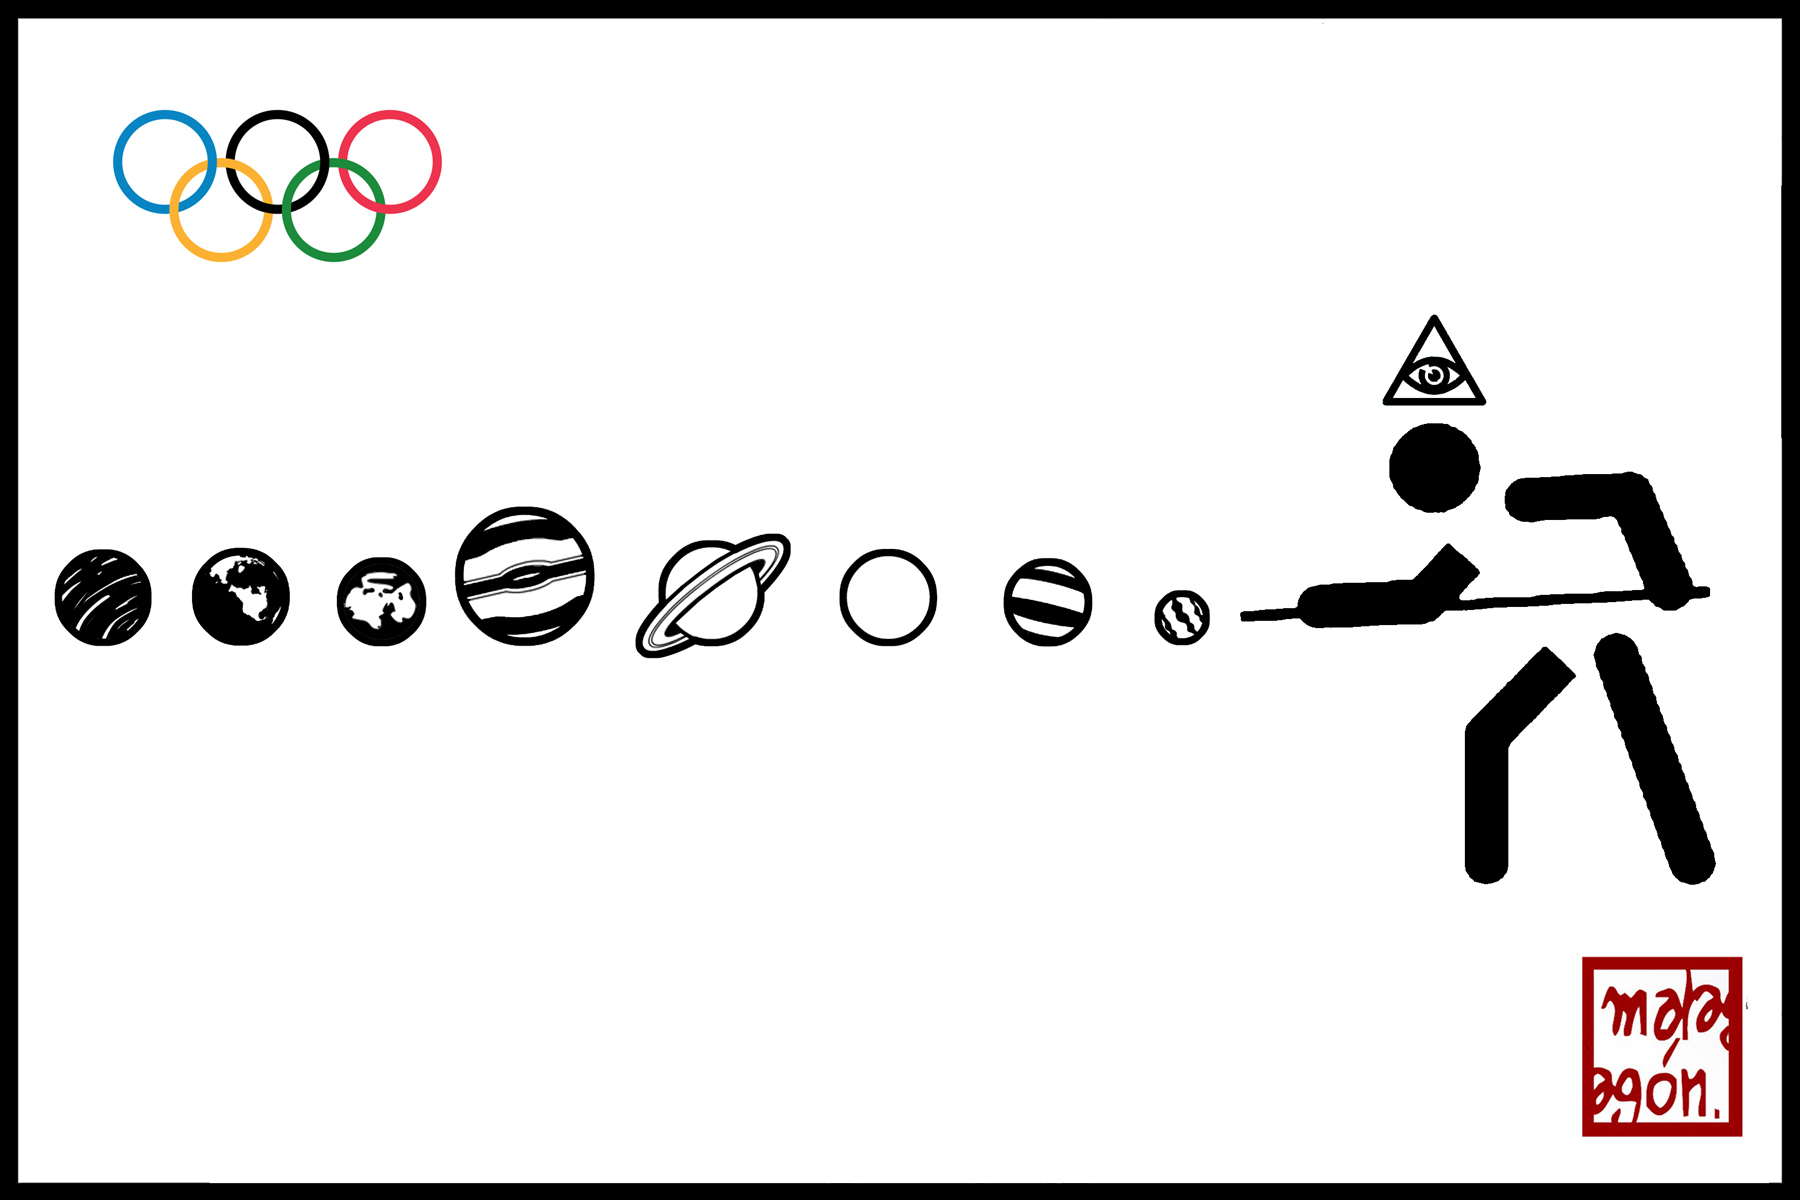 <p>Juegos Olímpicos, billar.</p>